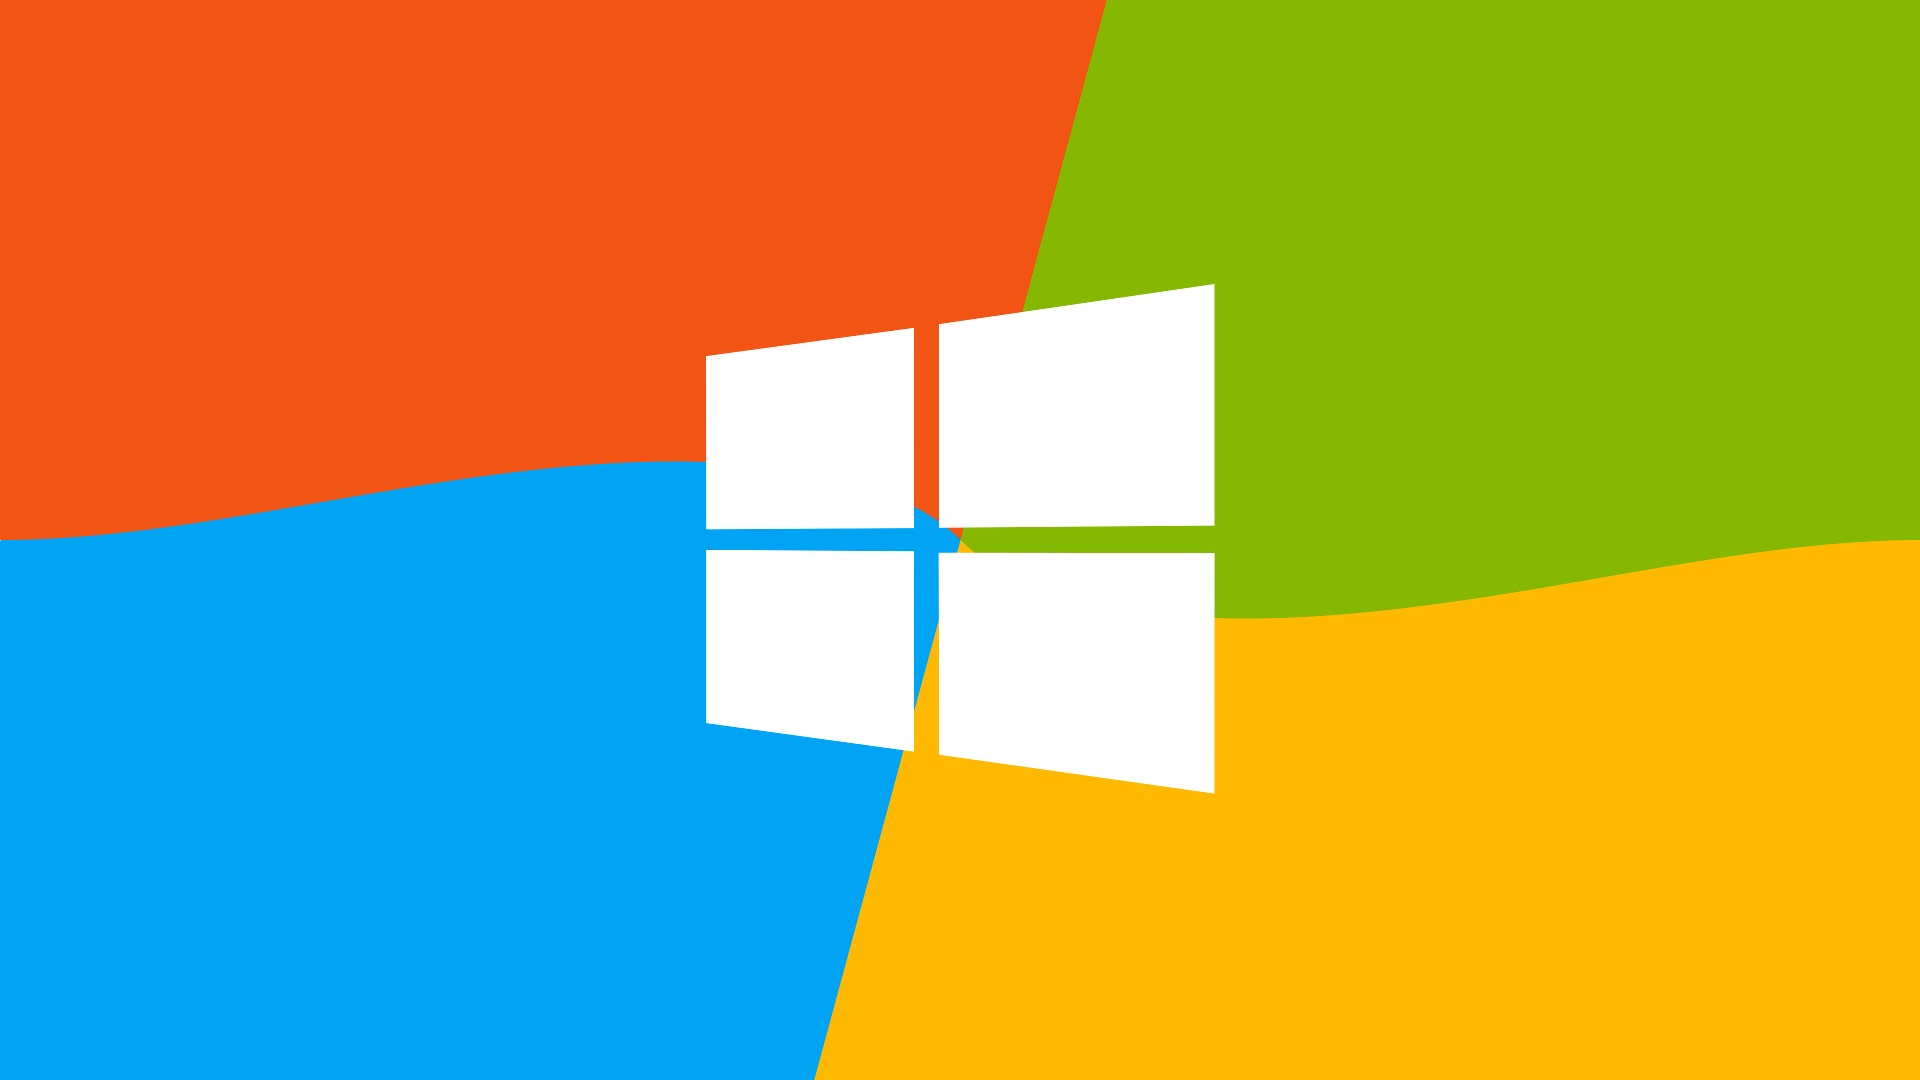 Microsoft Windowsの9システムテーマのHD壁紙 #15 - 1920x1080